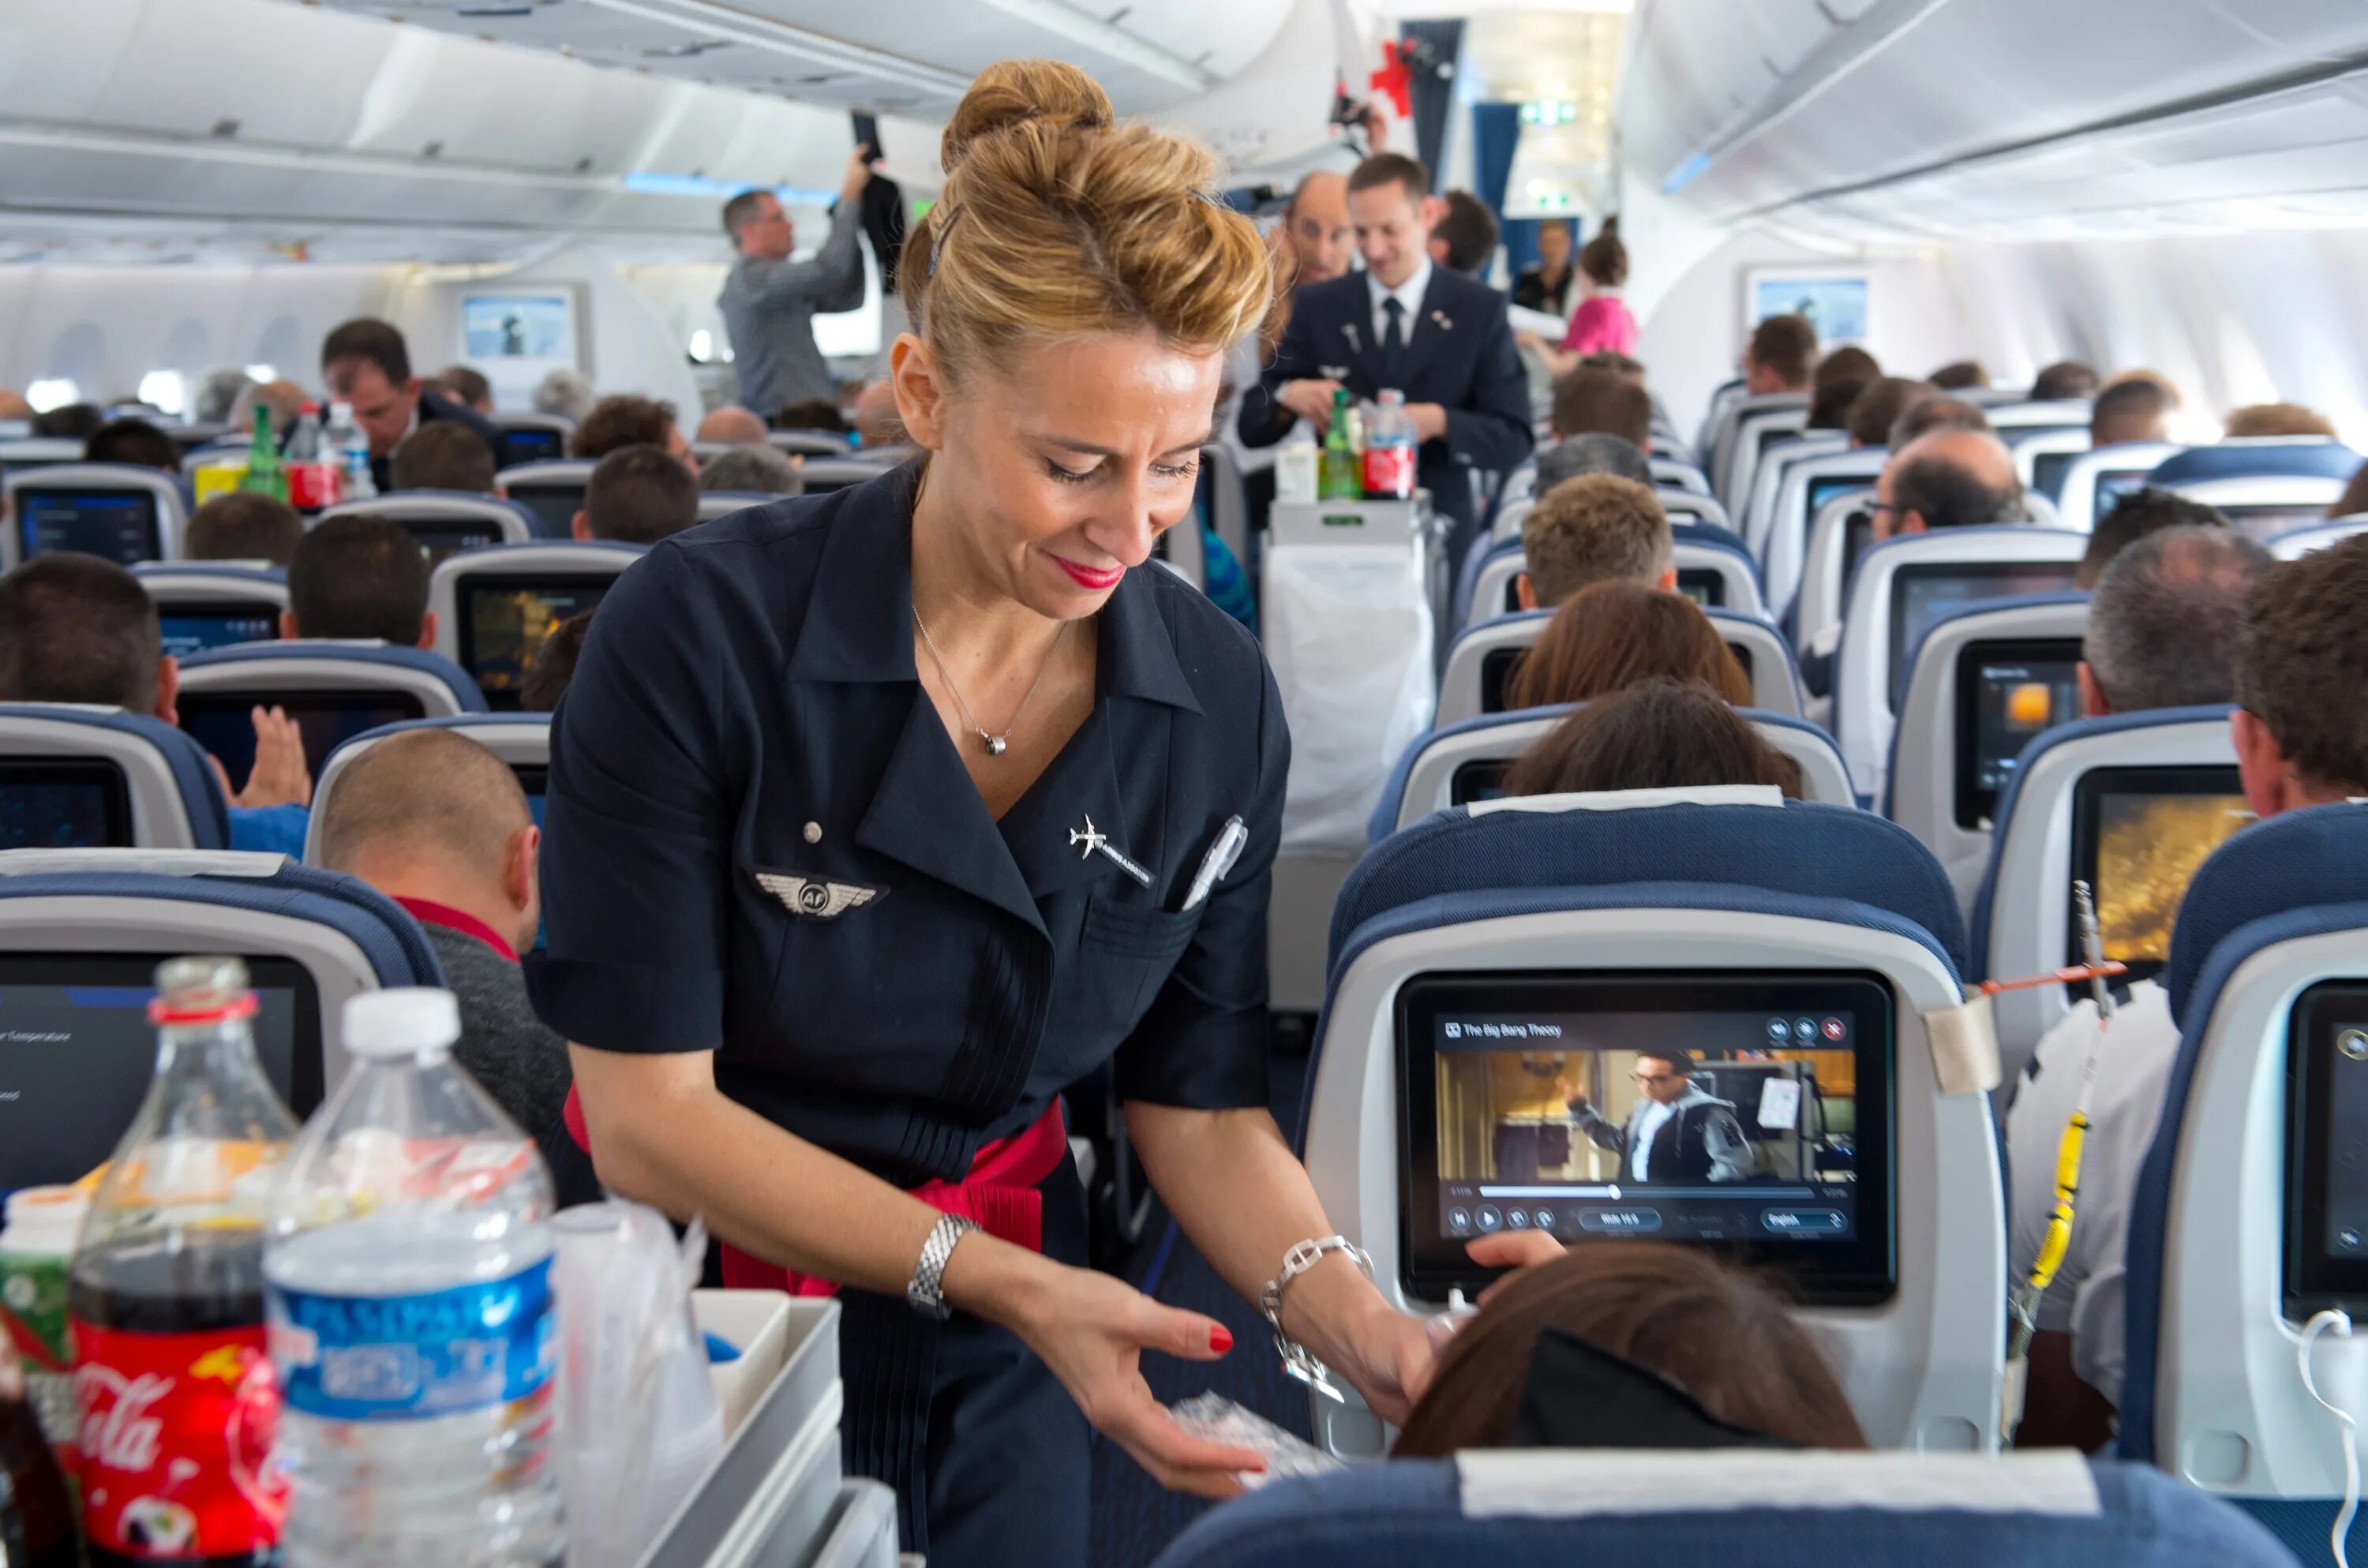 Air France стюардессы. Развлечения на борту Lufthansa. АИР Френс авиакомпания. Стюардесса в салоне самолета.